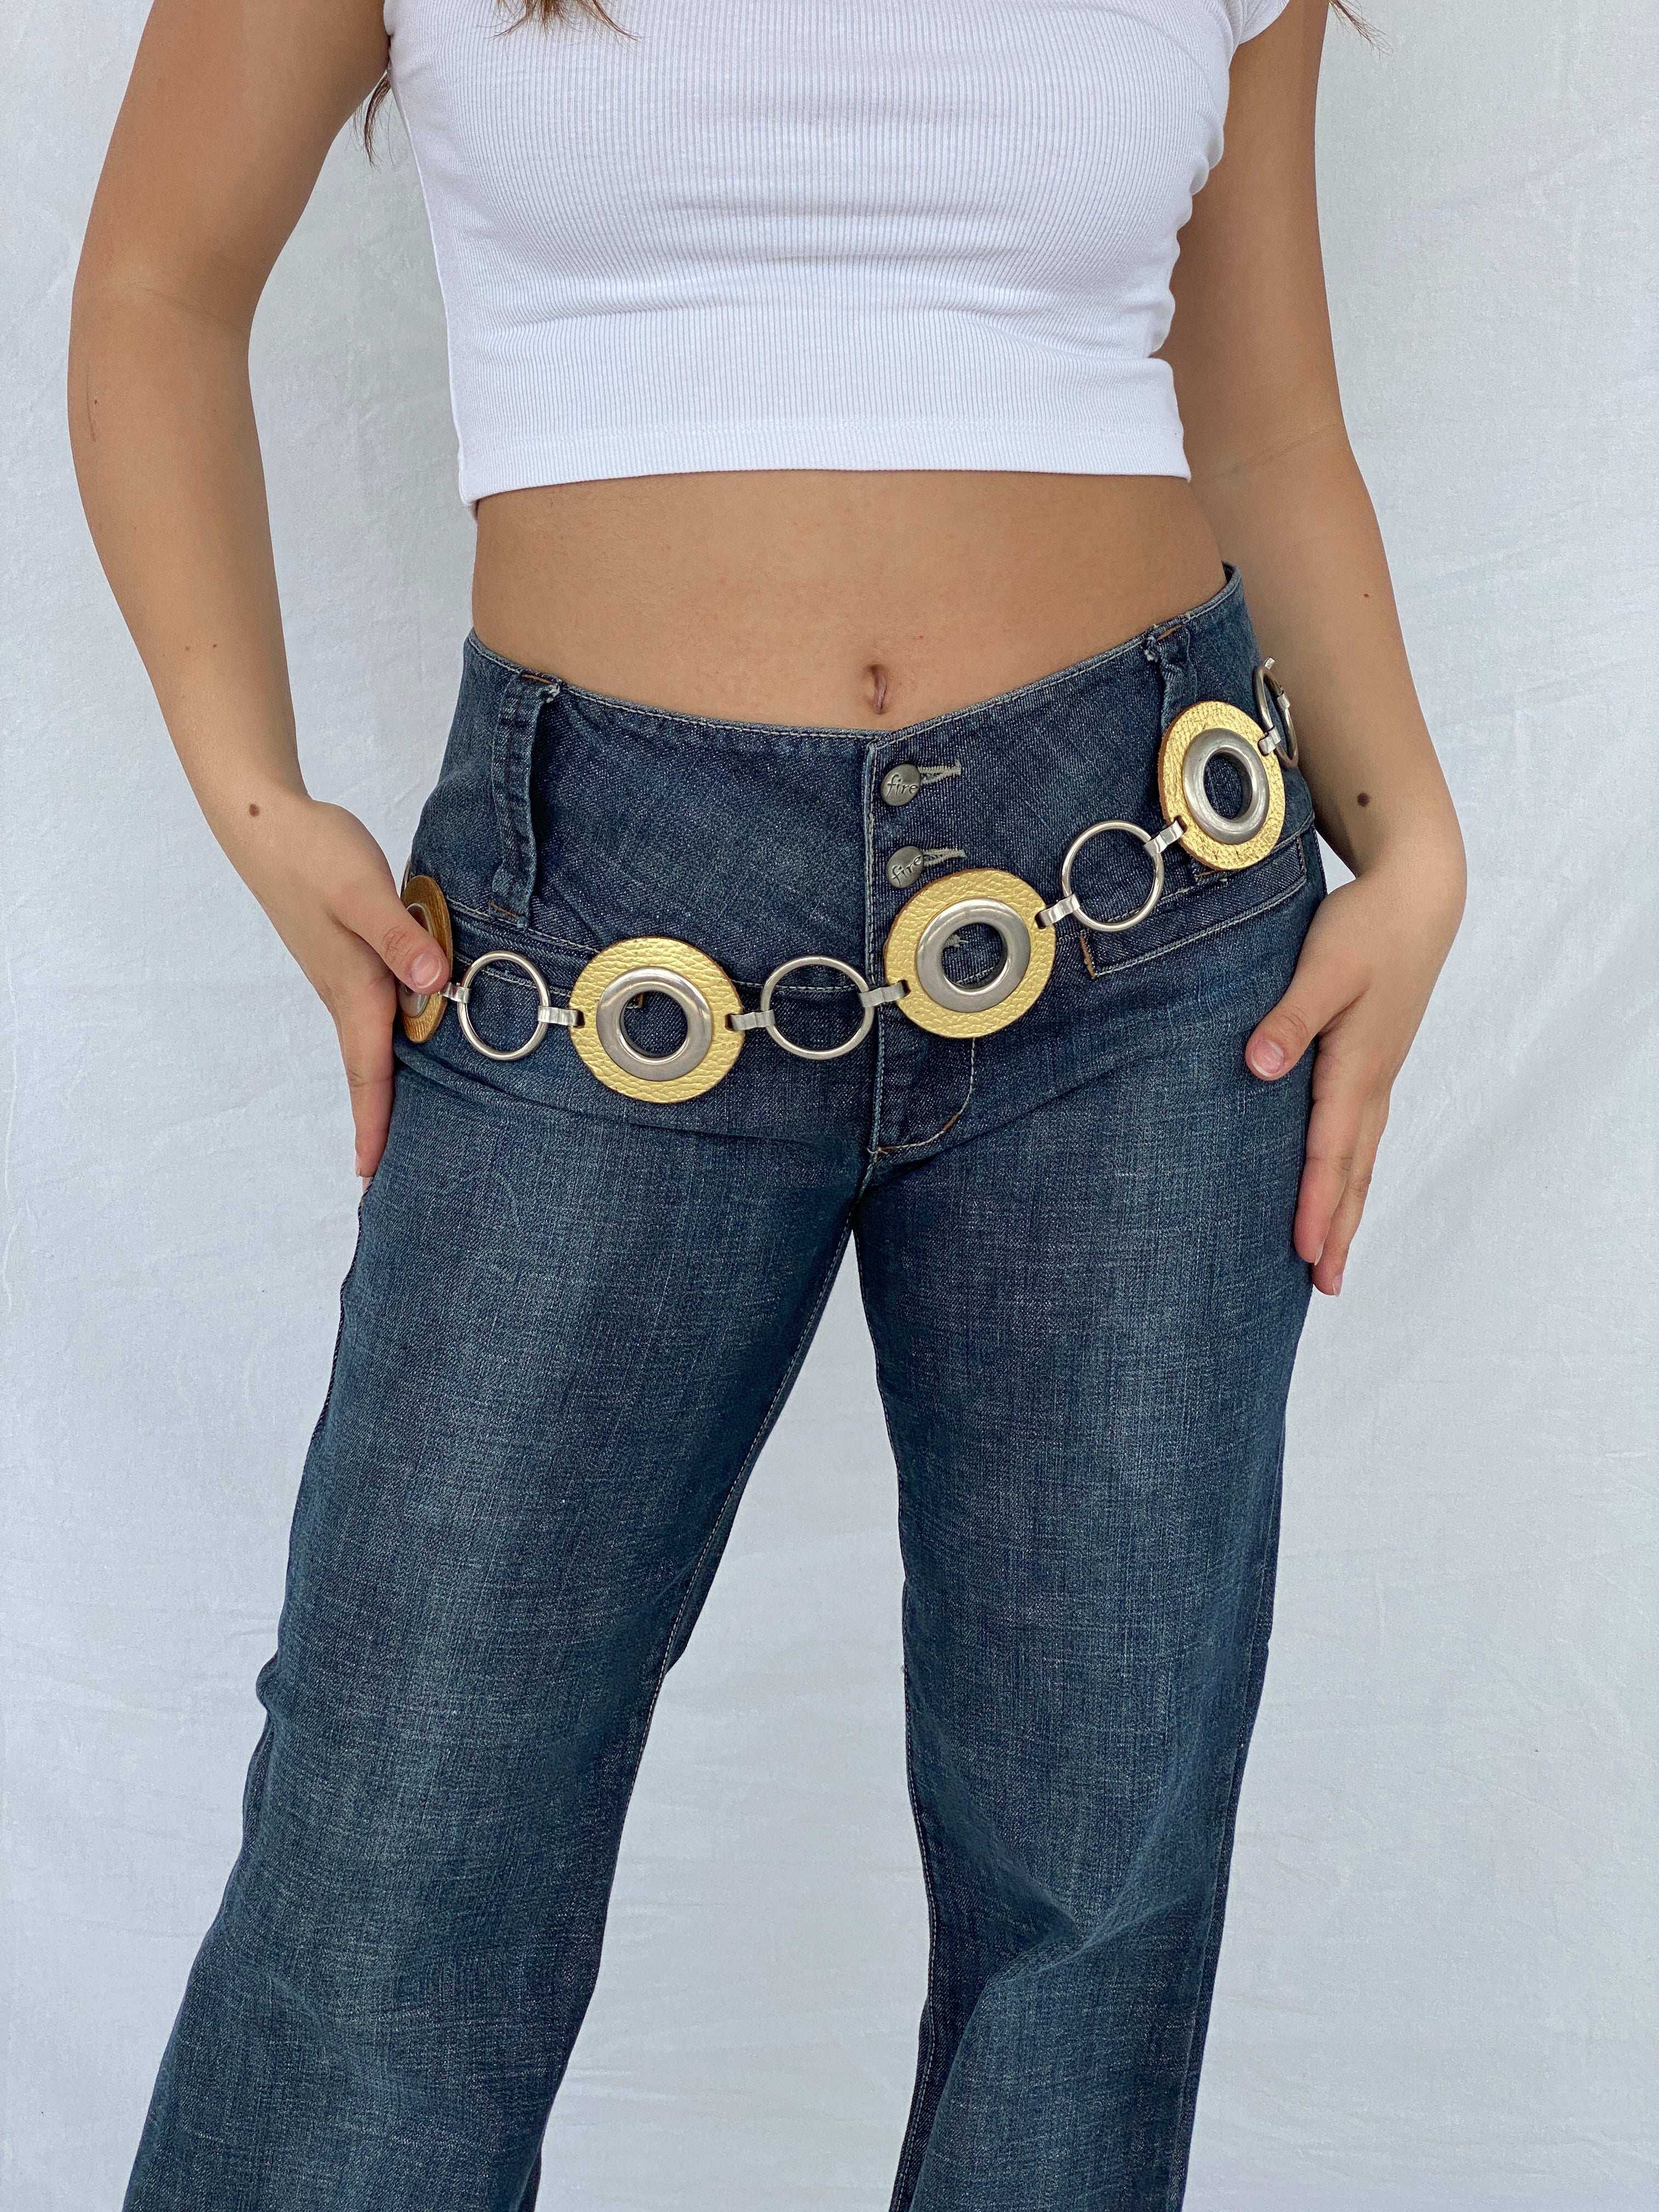 Statement Y2K Concho Chain Belt - Balagan Vintage Belt 90s, belt, cowboy, Lana, NEW IN